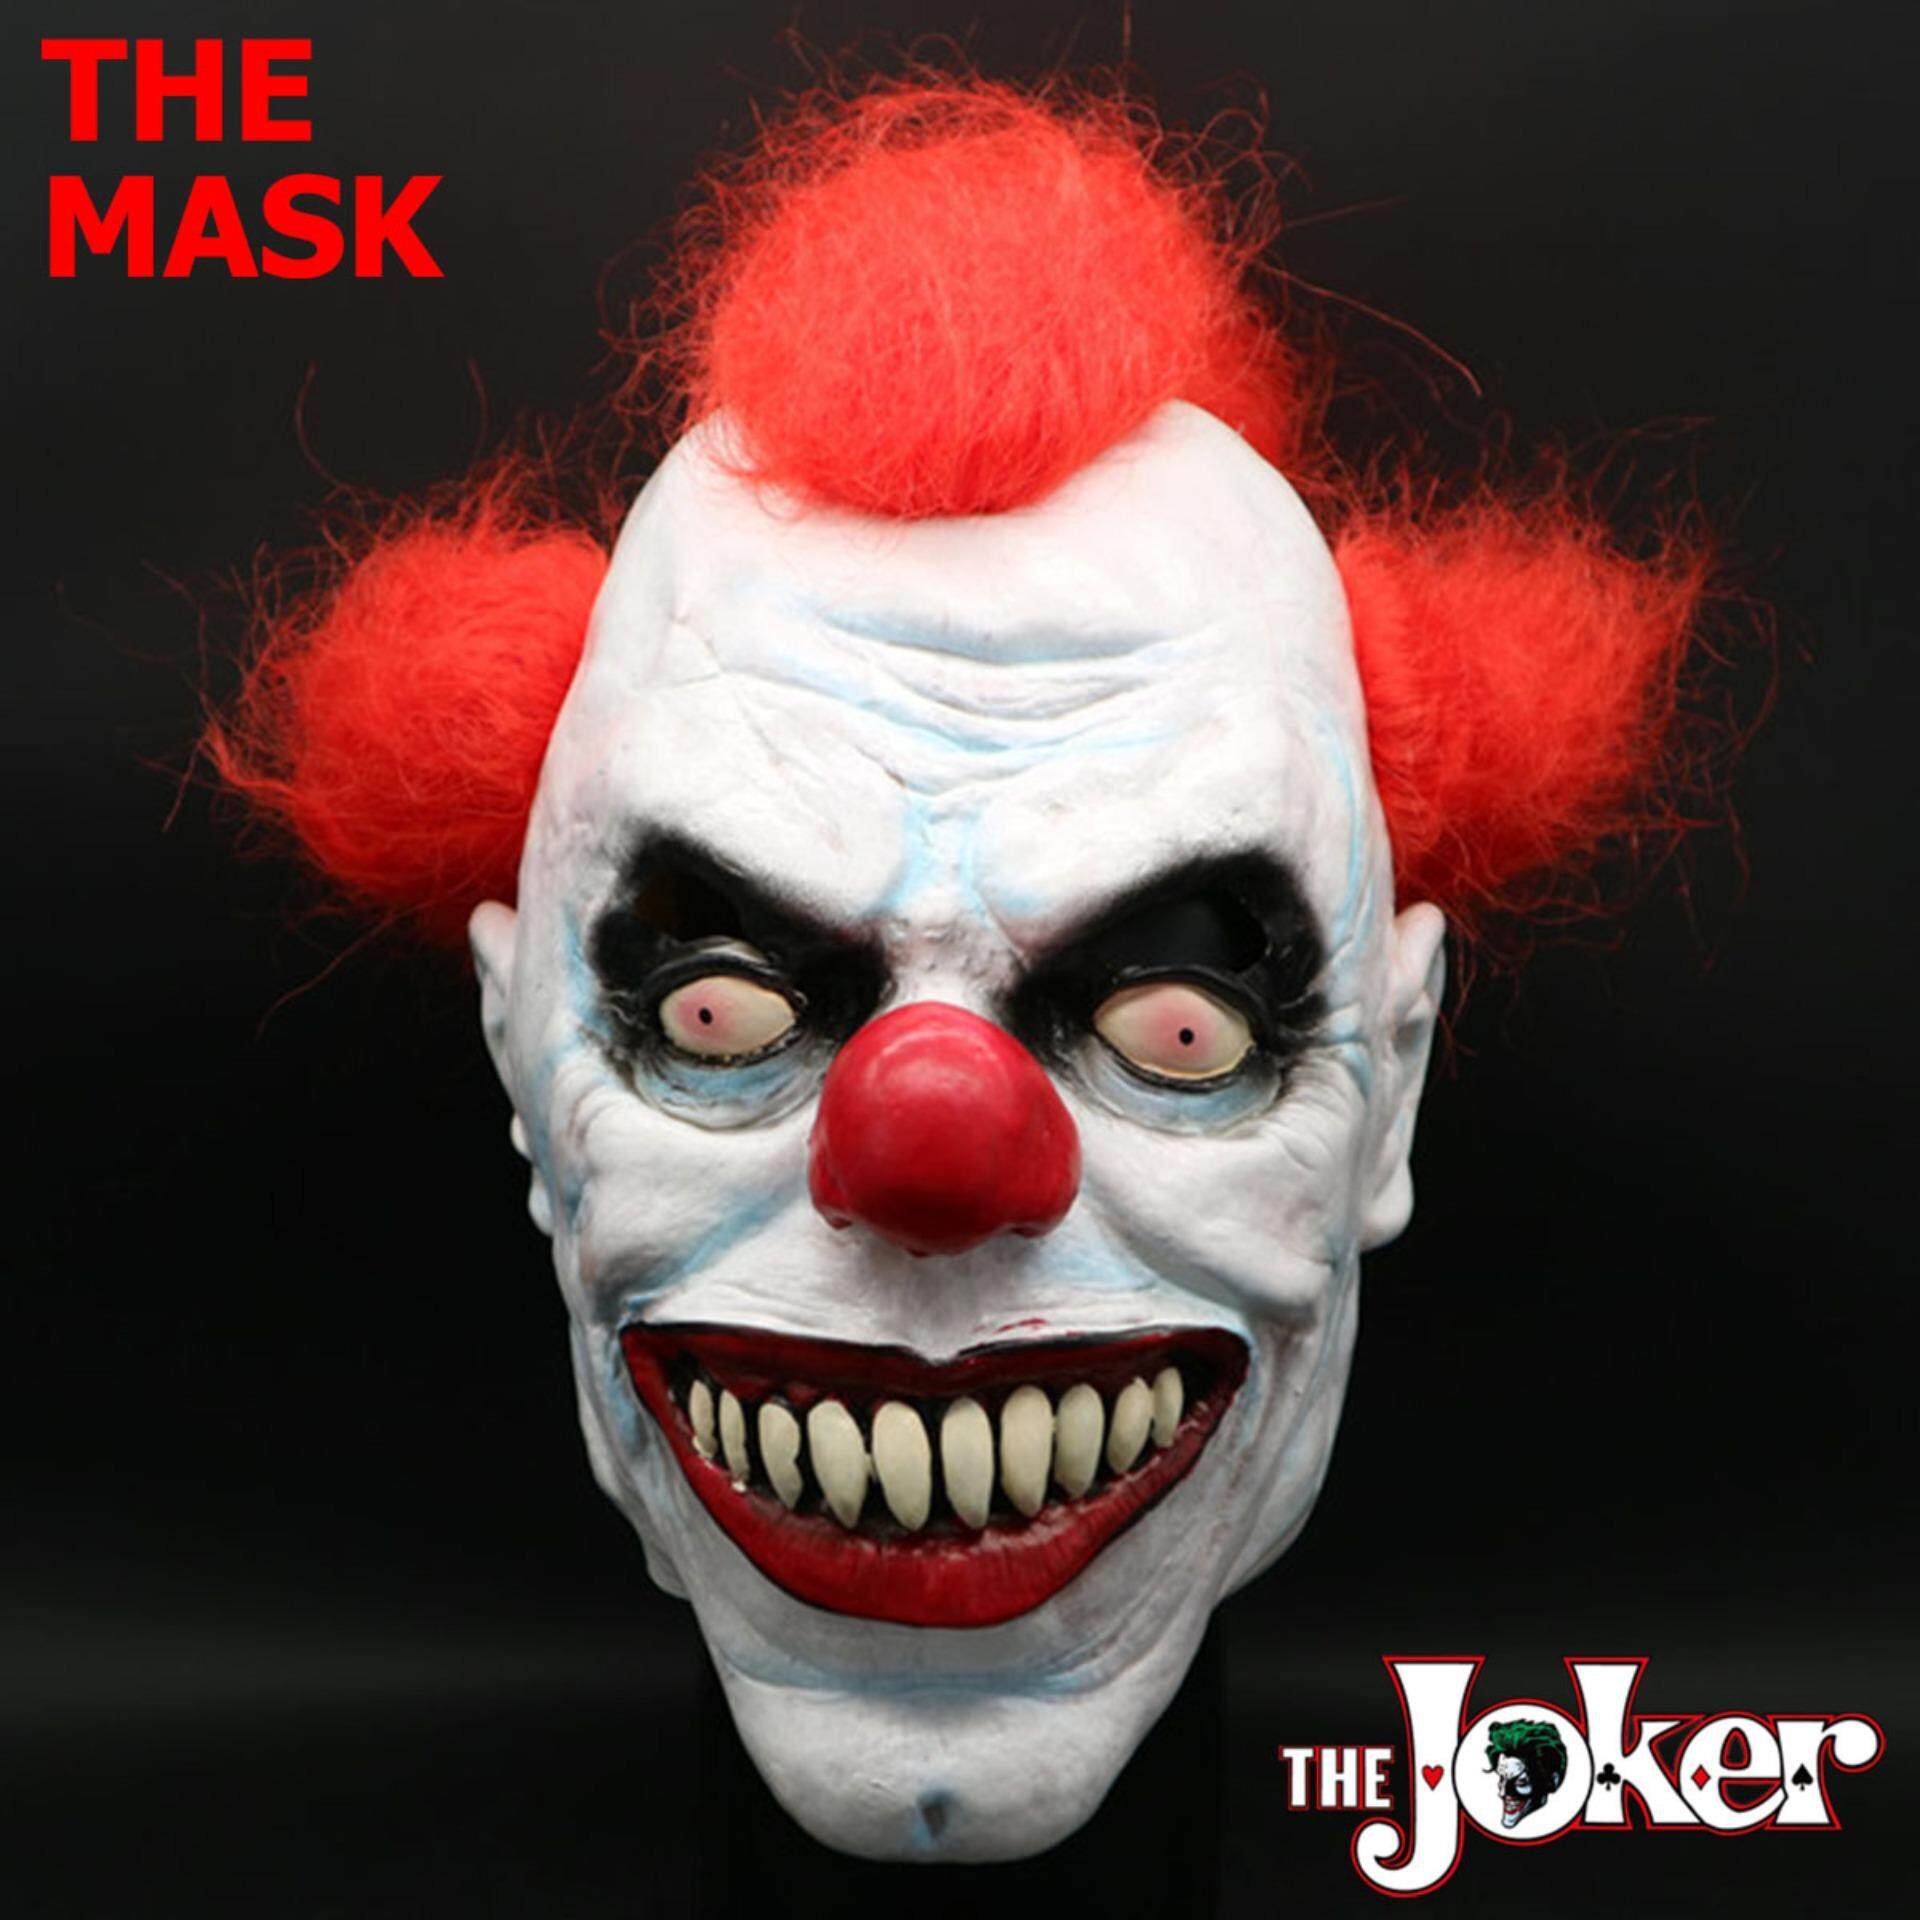 JAPAN Mask Hot หน้ากาก Joker โจ๊กเกอร์ ตัวตลก Devil Clown ปีศาจ หน้ากากตัวตลก สุดโหด วัสดุ Emulsion อิมัลชัน น้ำยางธรรมชาติเป็นมิตรต่อสิ่งแวดล้อม คอลเลคชั่น ของสะสม ไส่เล่น BB GUN บีบีกัน Cosplay คอสเพลย์ Halloween ฮาโลวีน